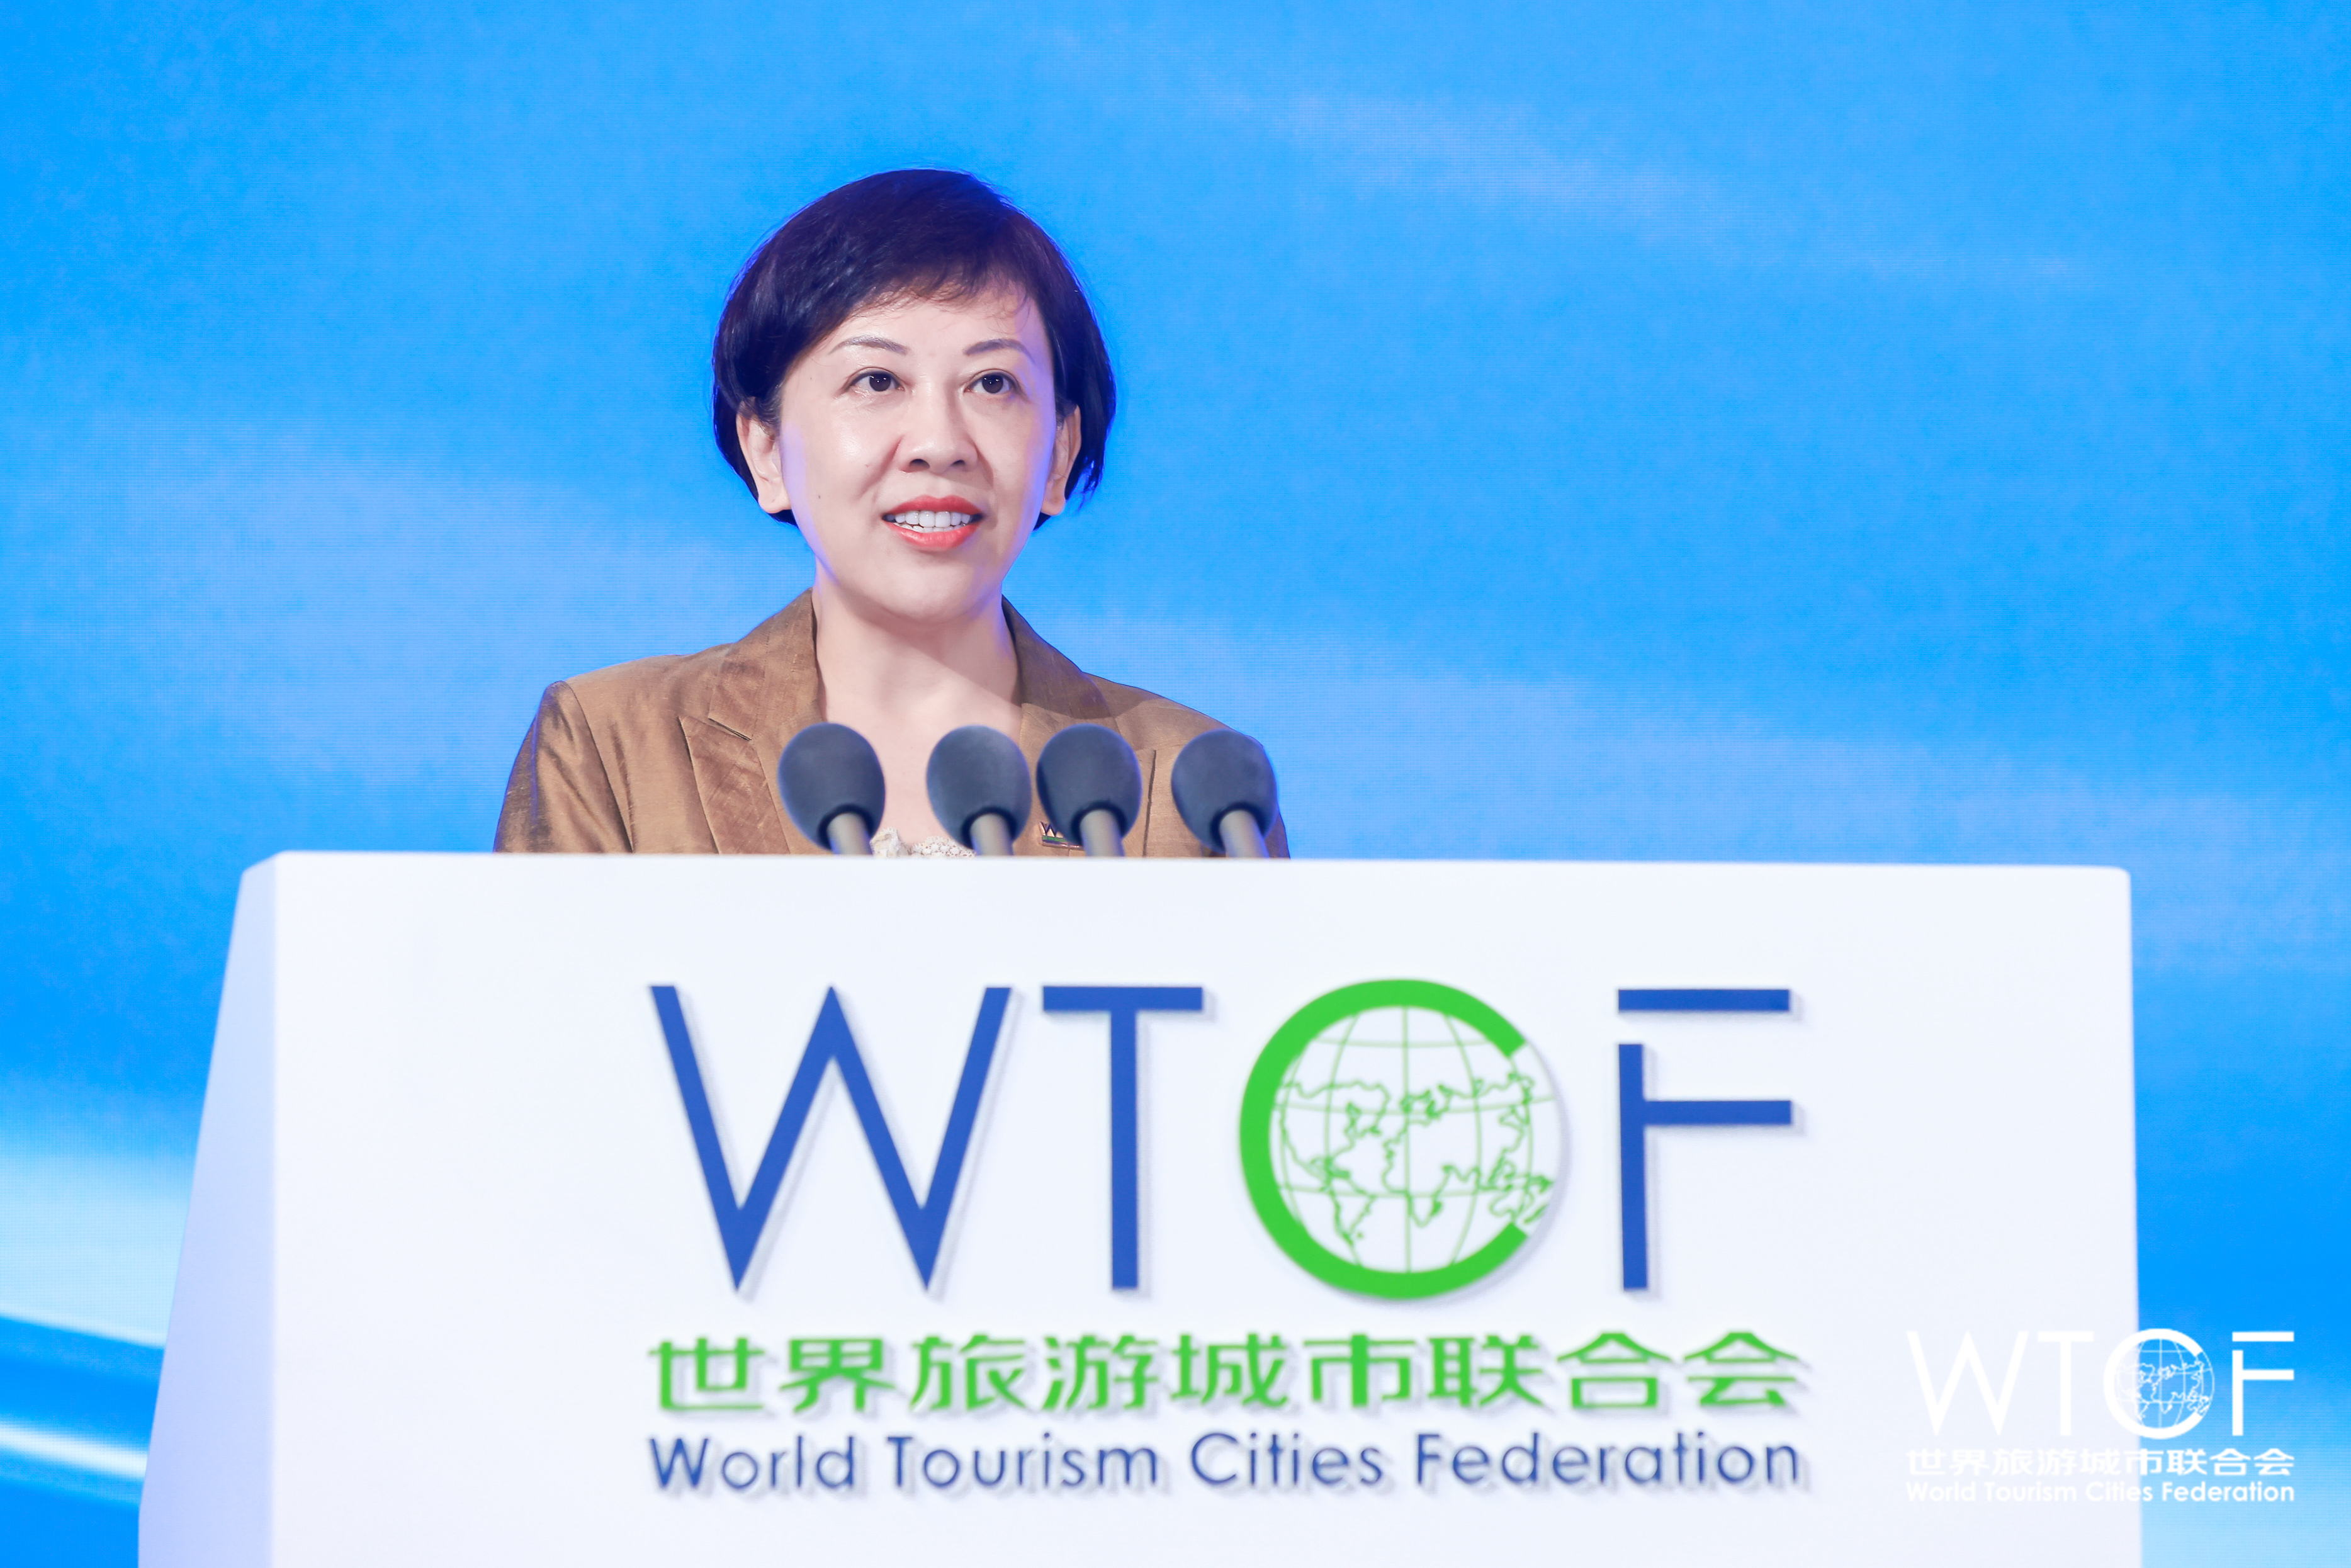 北京市副市長司馬紅：凝聚城市發展力量 共同繁榮世界旅遊城市